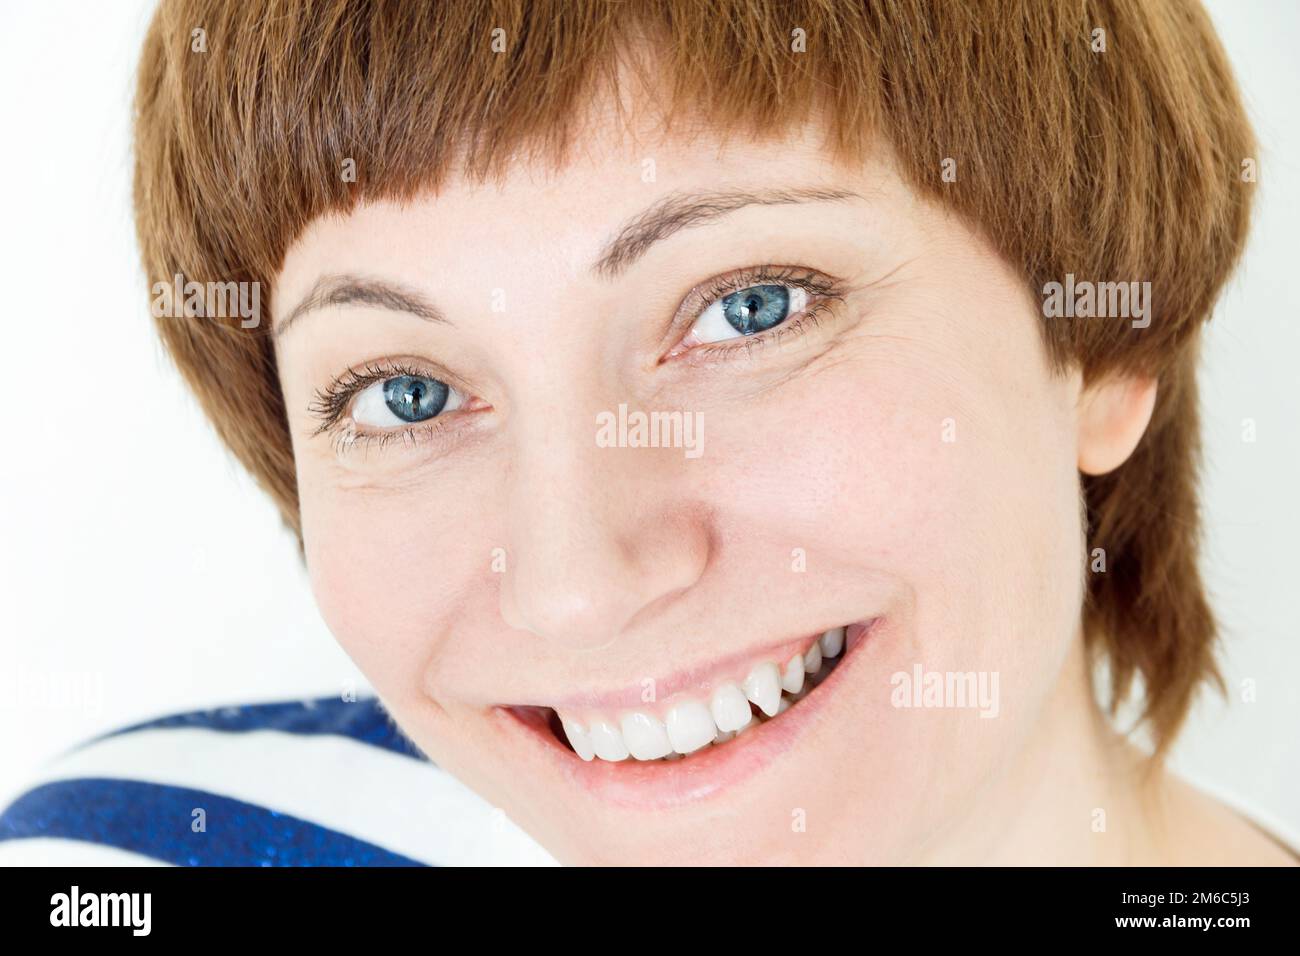 Portrait de femme heureuse avec des cheveux bruns courts Banque D'Images